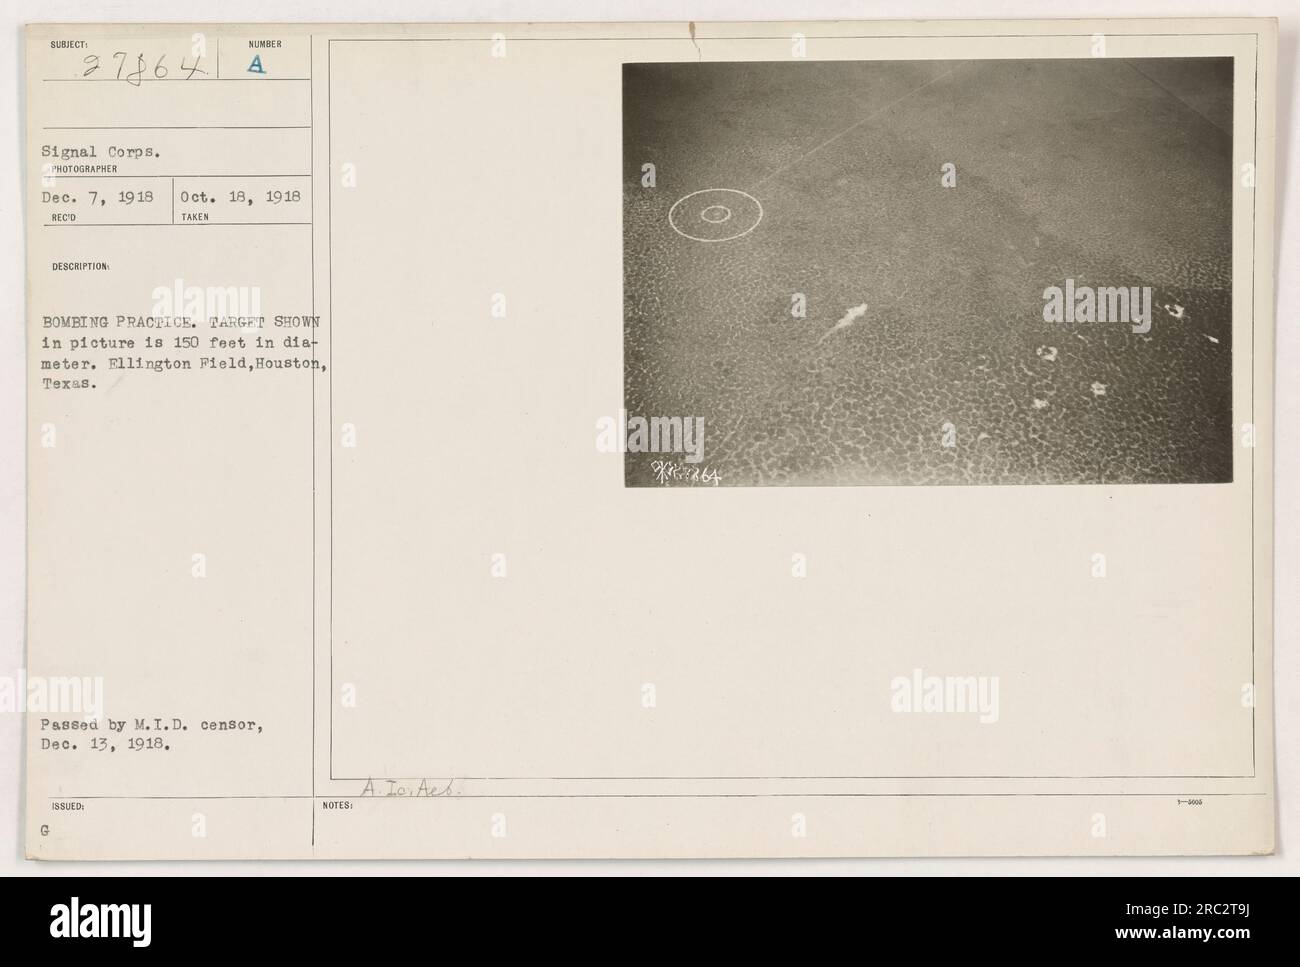 Cette photographie, prise le 18 octobre 1918, montre un entraînement à la bombe à Ellington Field à Houston, Texas. La cible sur la photo a un diamètre de 150 pieds. La photographie a été transmise par le censeur du M.I.D. le 13 décembre 1918. Remarque : l'activité n'est pas identifiée. Banque D'Images